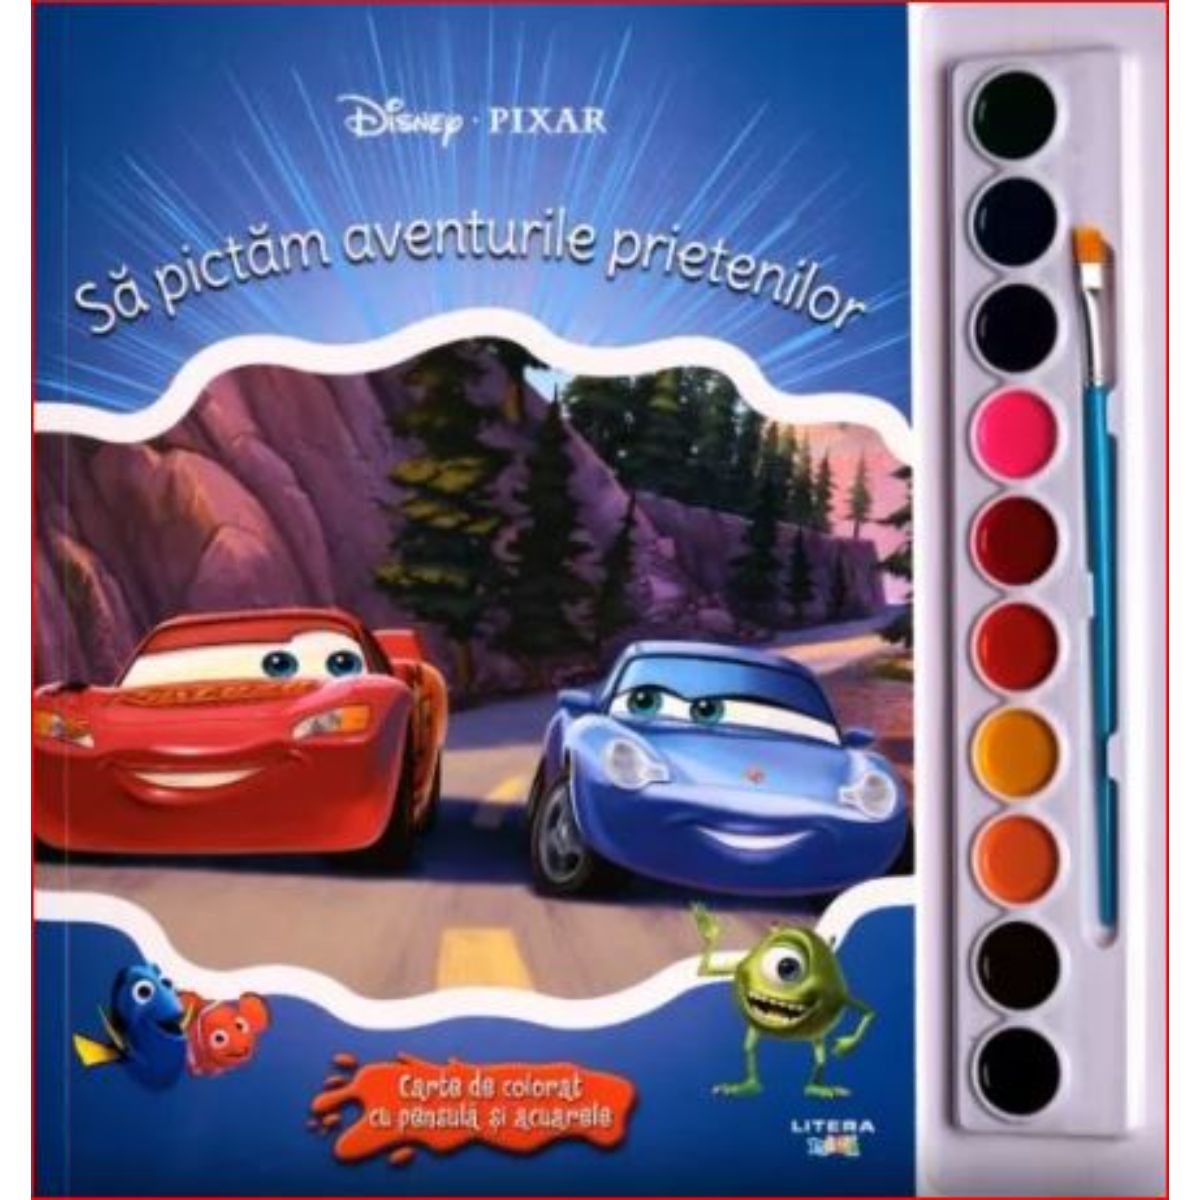 Sa pictam aventurile prietenilor carte de colorat cu pensule si acuarele, Disney Pixar acuarele